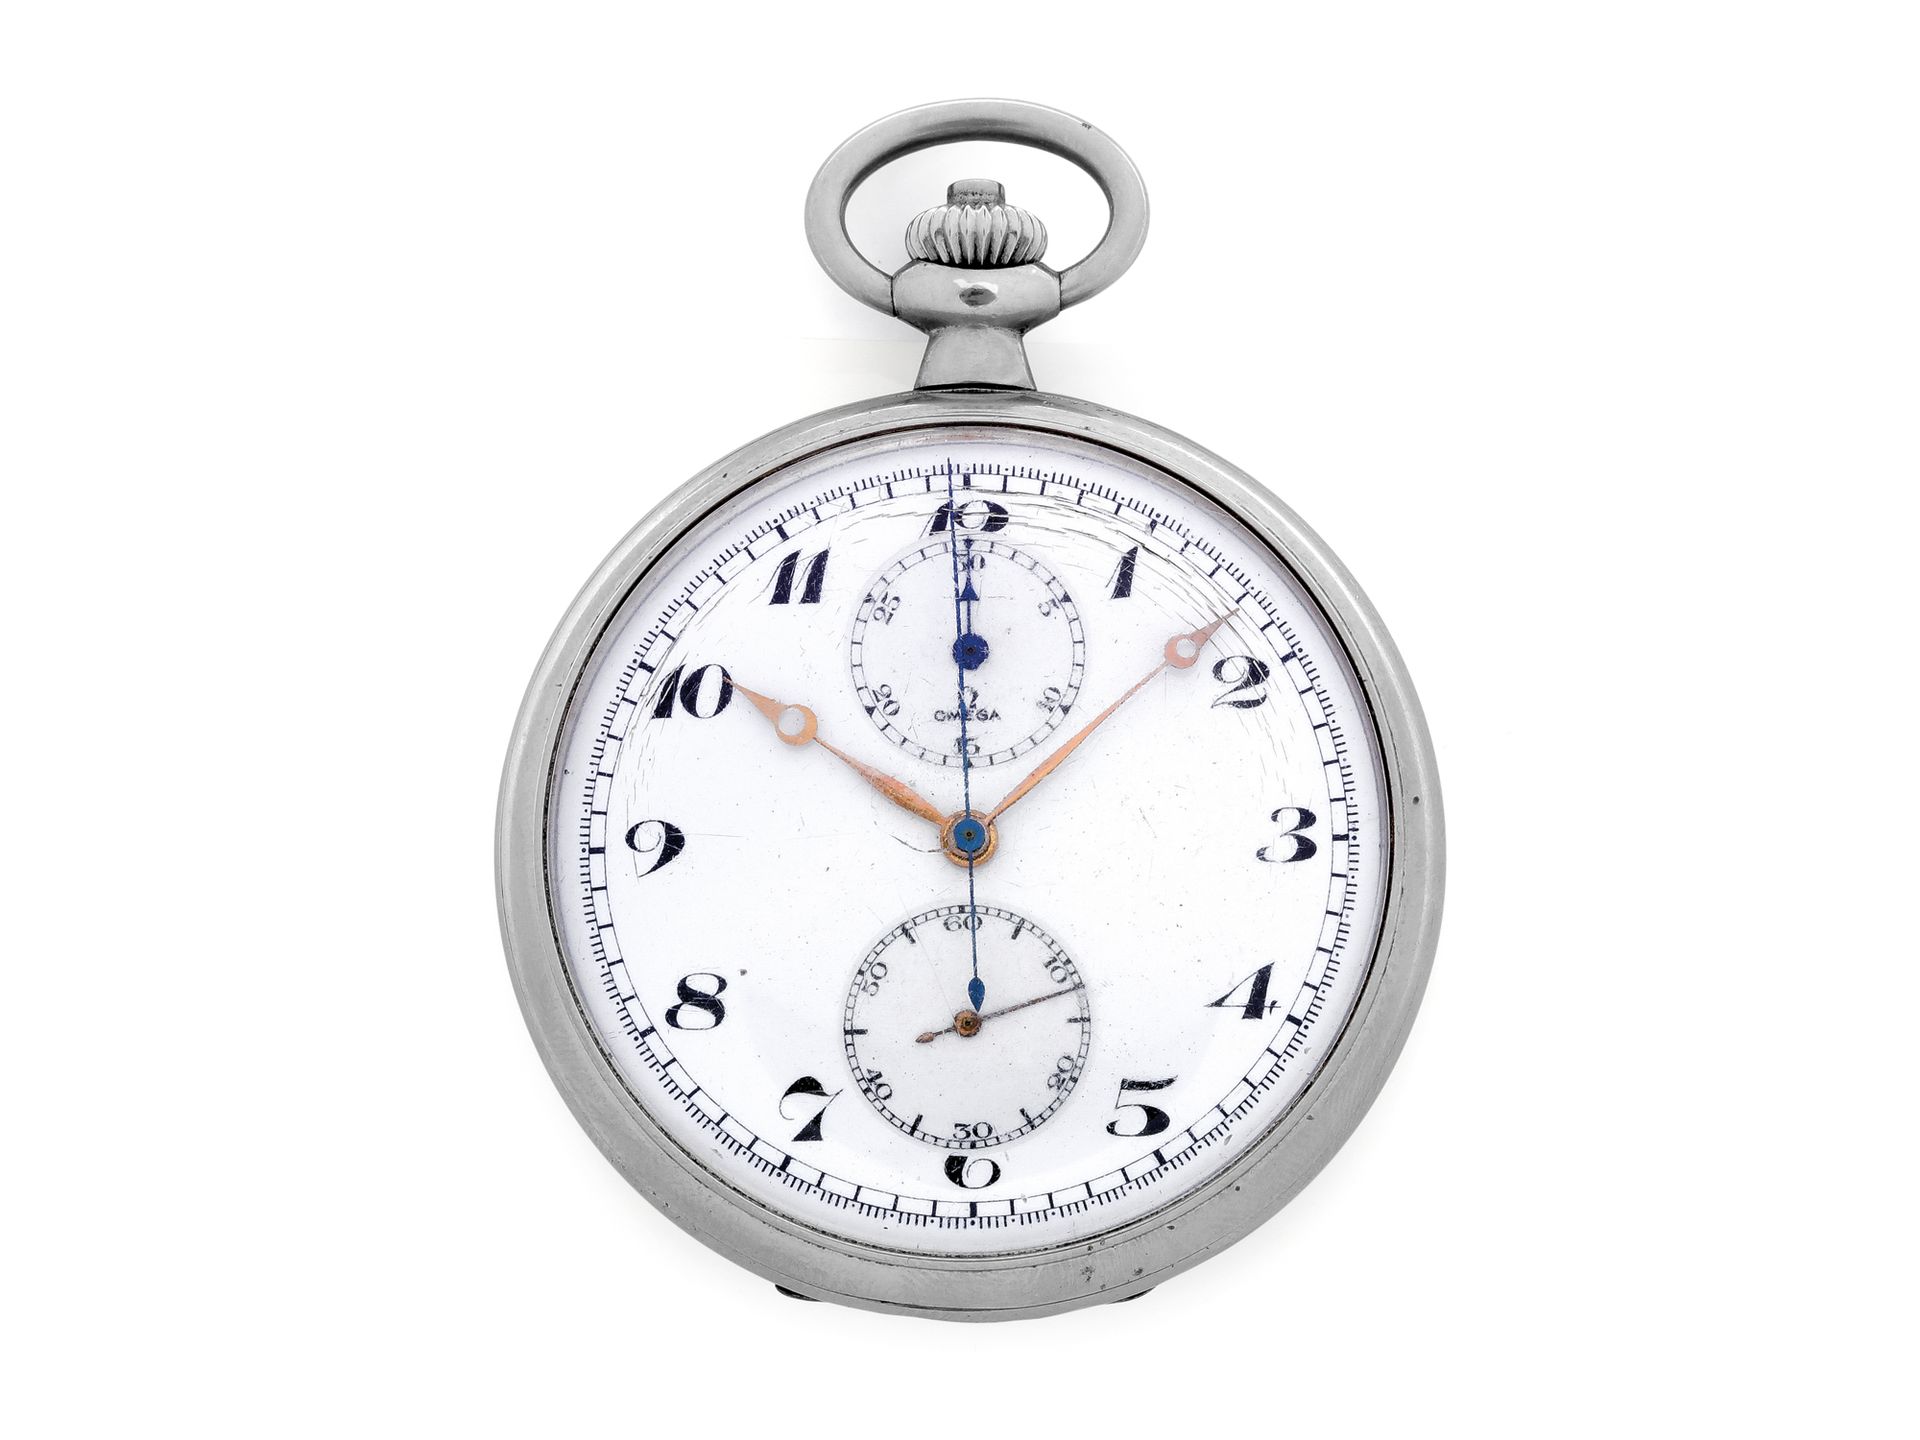 OMEGA Taschenchronograph
Taschenchronographenuhr aus Stahl mit mechanischem Uhrw&hellip;